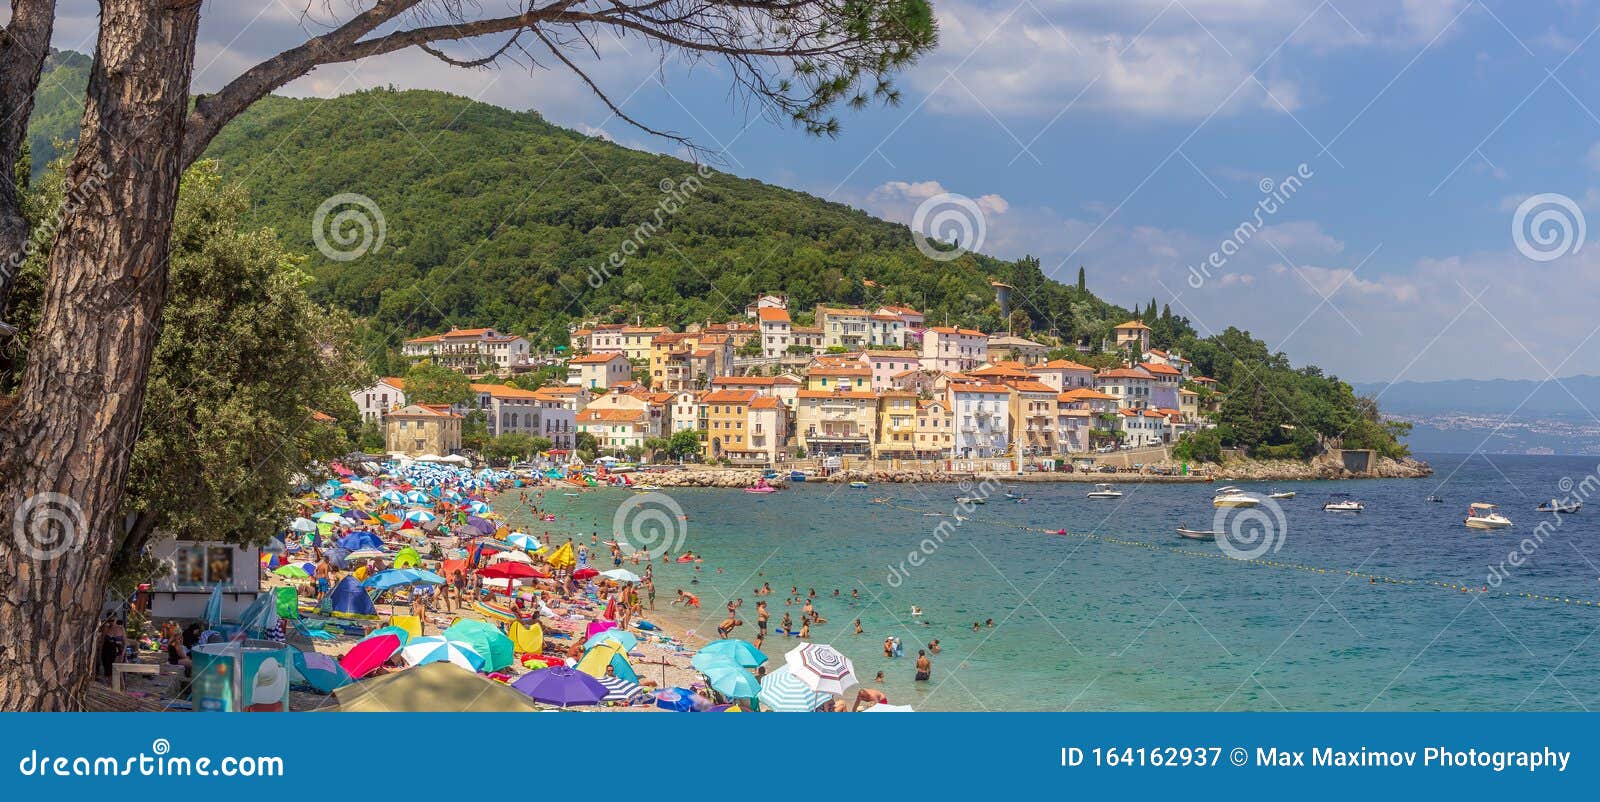 moÃÂ¡Ãâ¡eniÃÂka draga, croatia - beautiful water colors and old town and coastline at the adriatic sea beach full of people